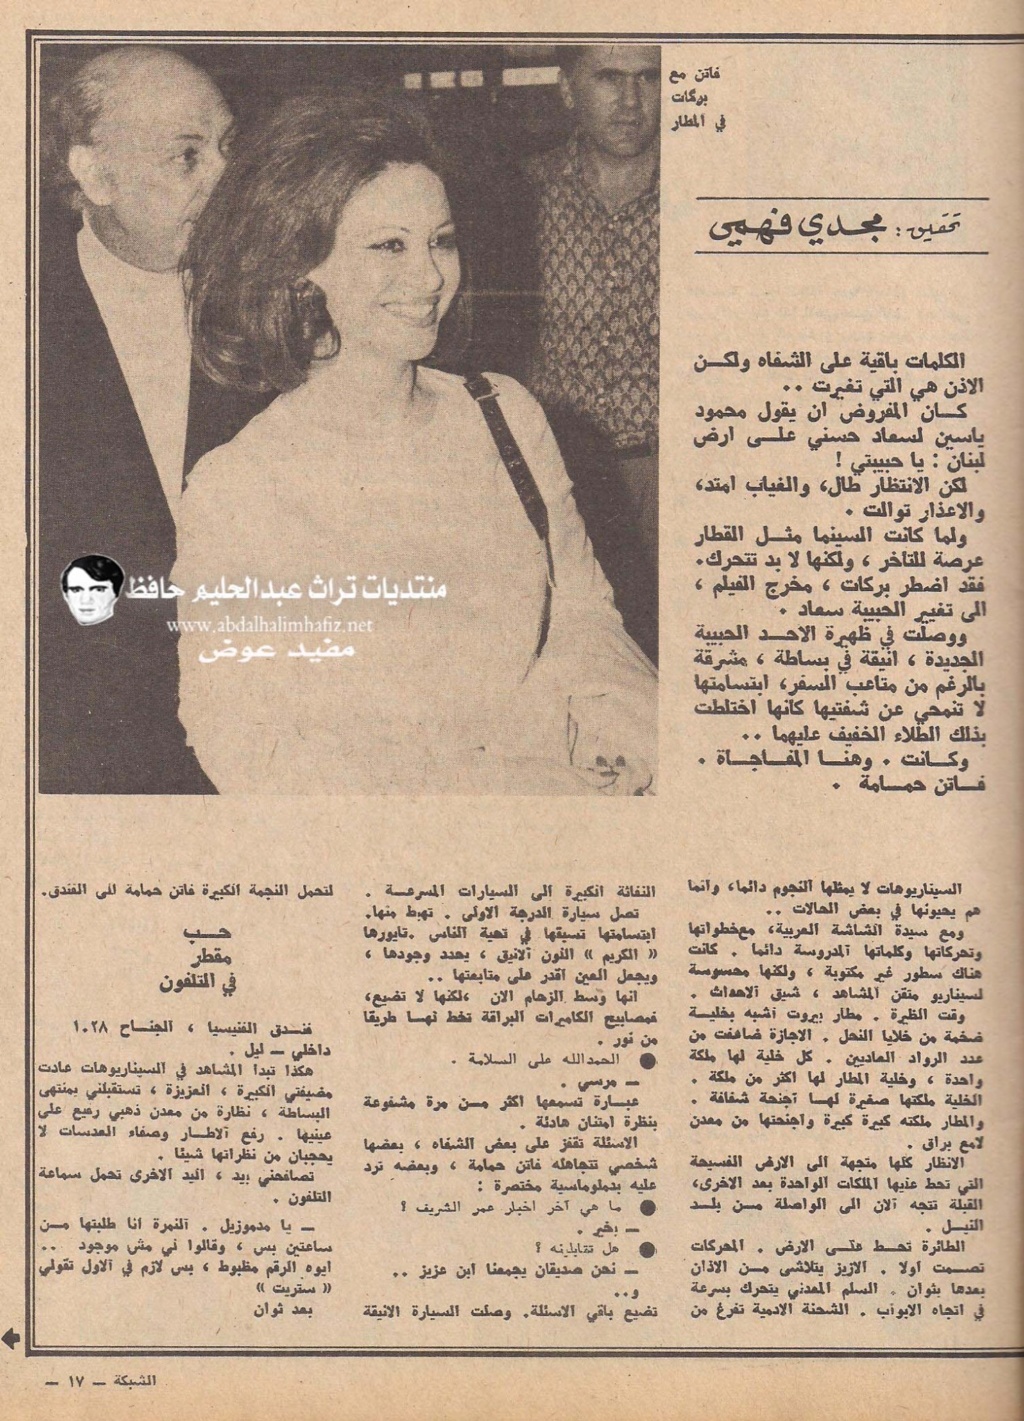 مقال صحفي : فاتن حمامة حبيبة في لبنان بدلا من سعاد حسني 1972 م 2174